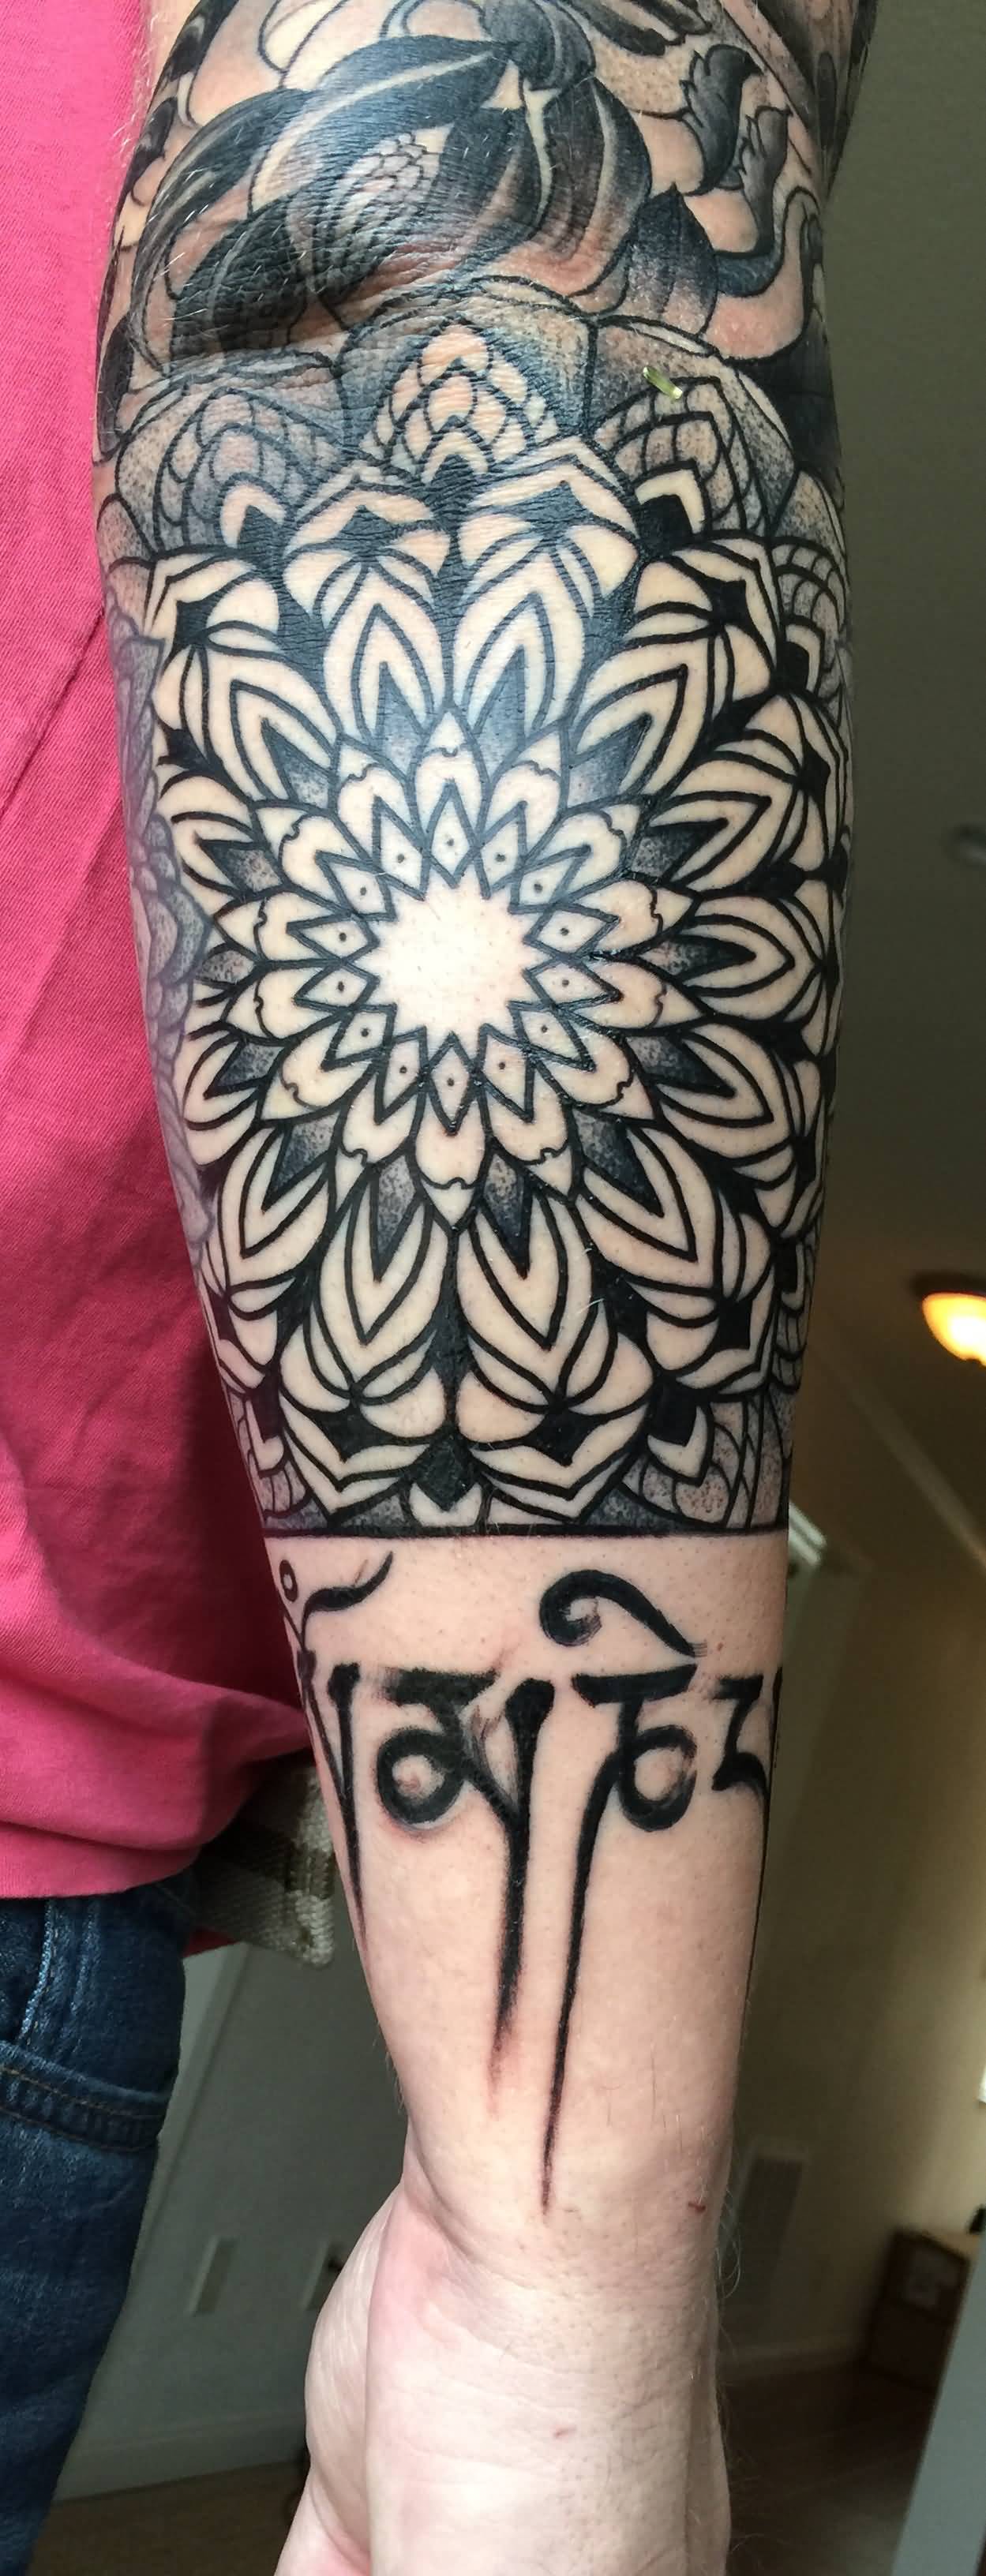 Nice Fractal Flower Tattoo On Arm Sleeve